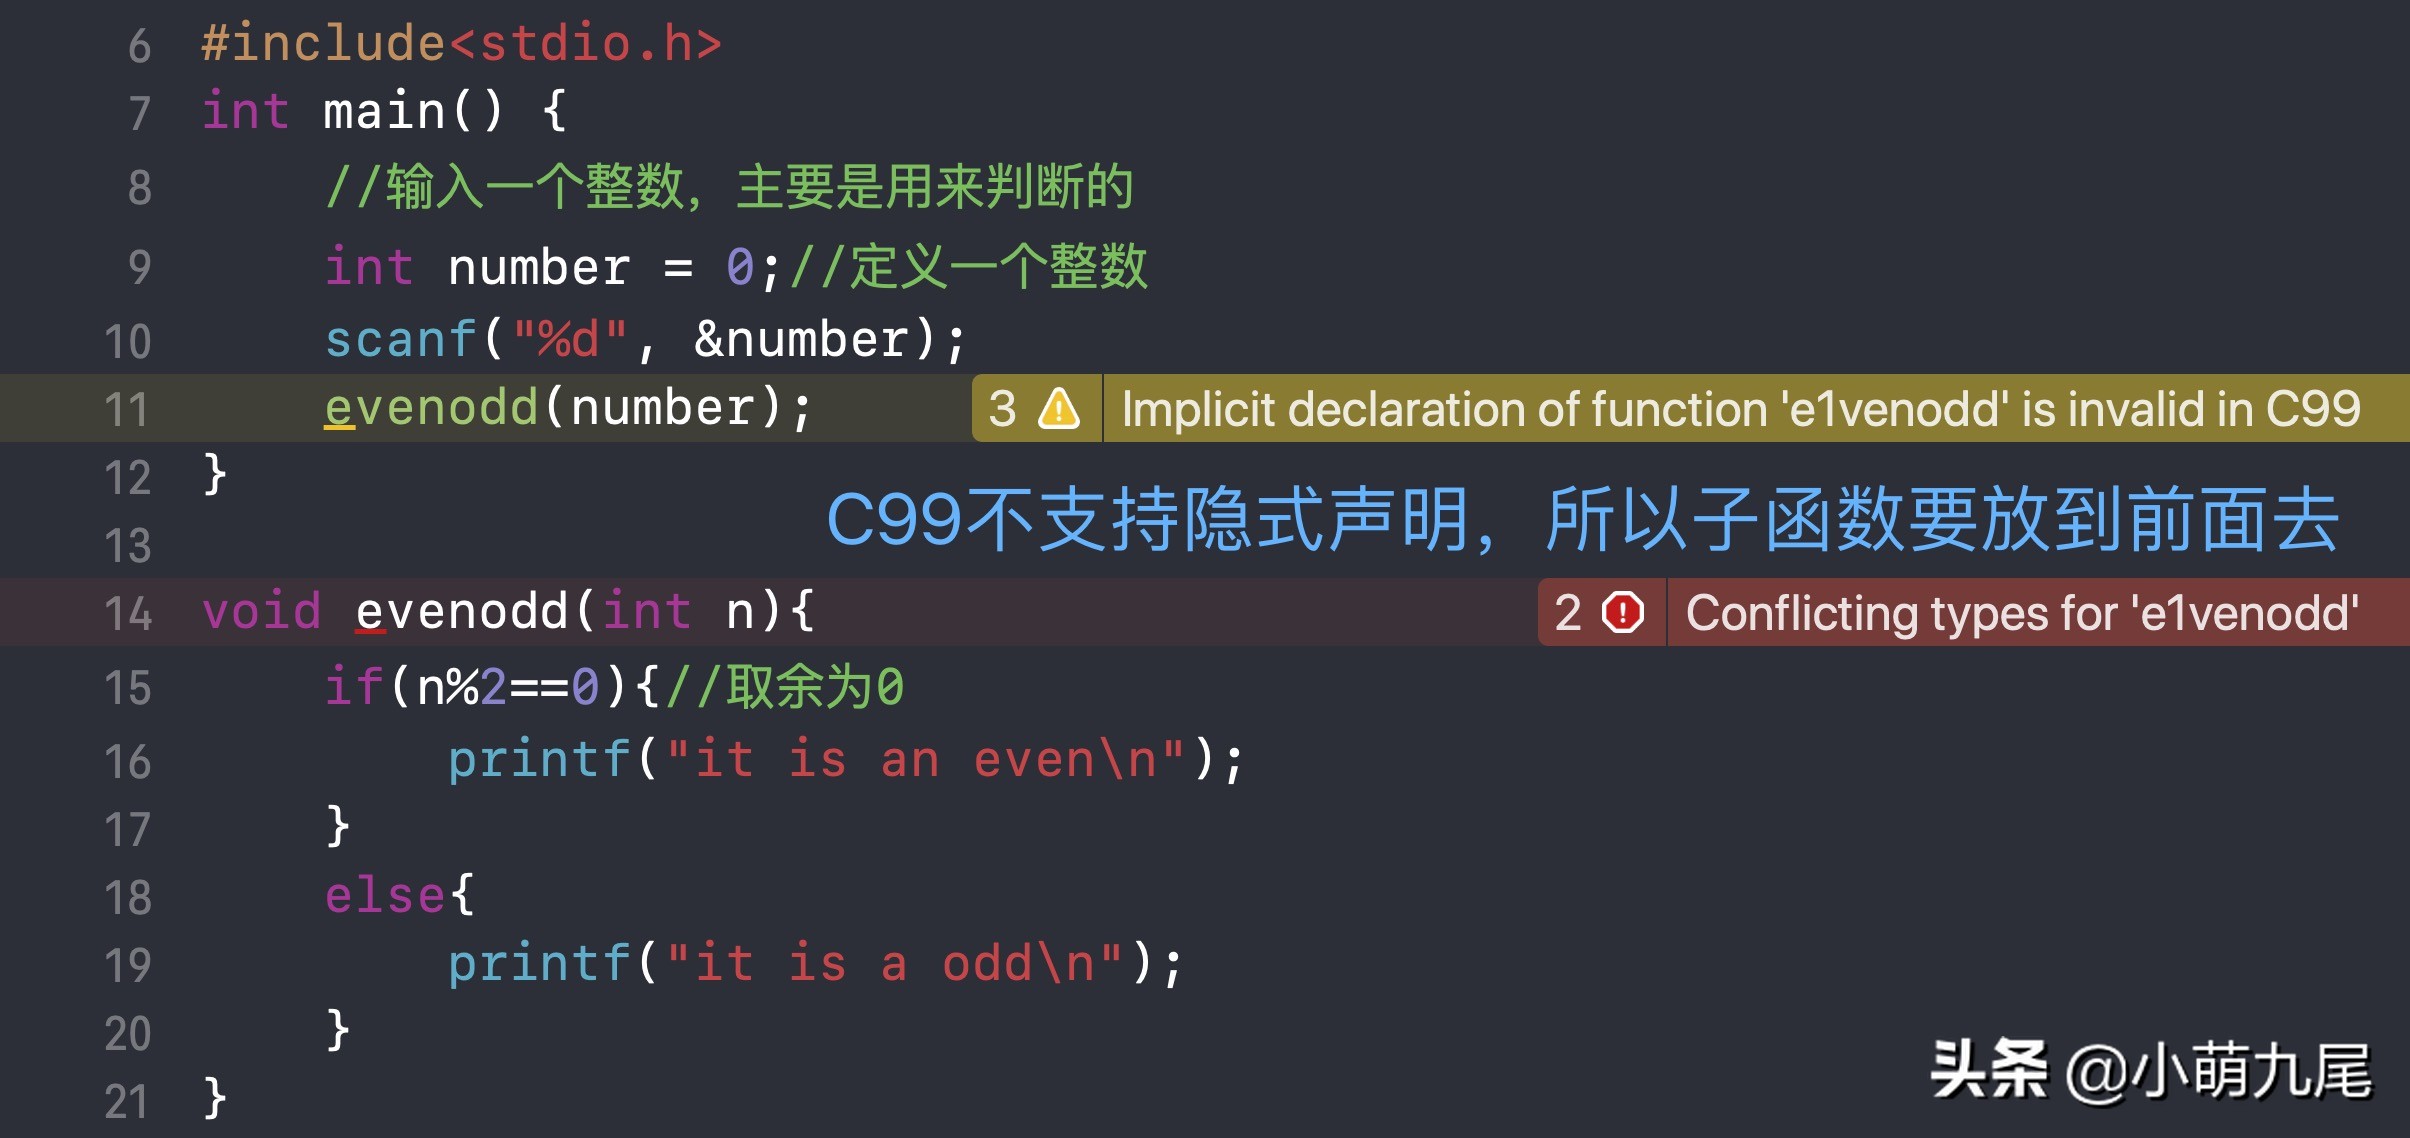 计算机当中的函数，用C语言实现函数的定义，对简化程序非常重要